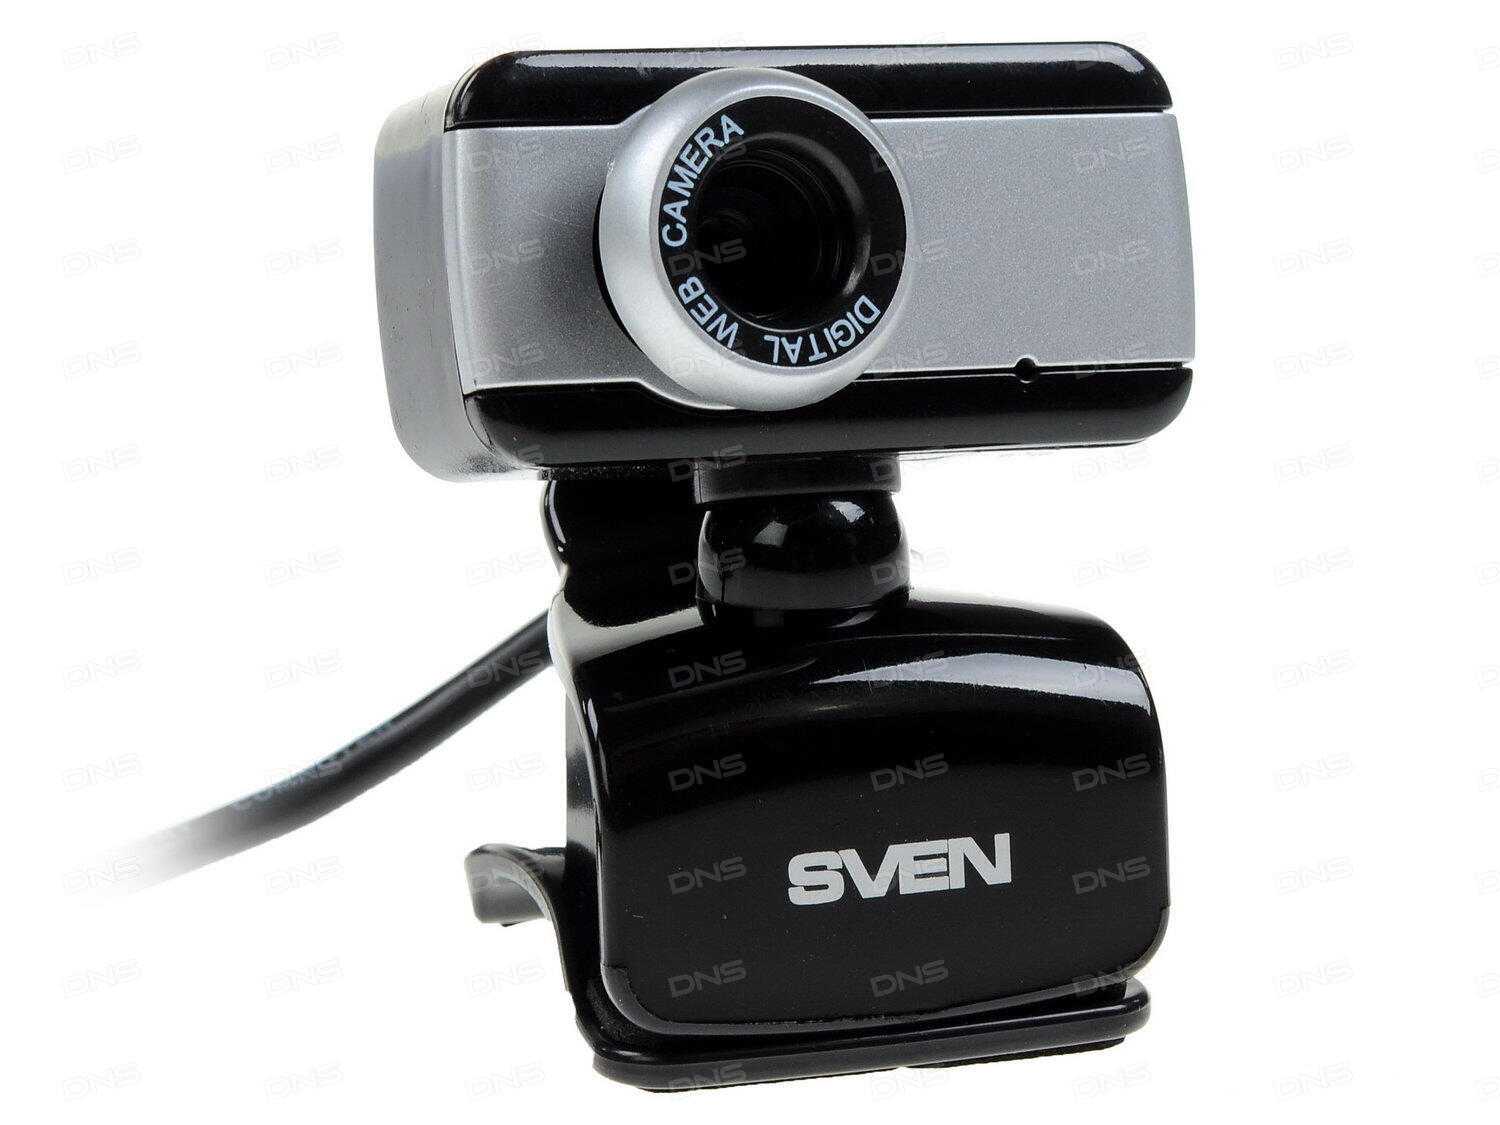 SVEN IC-320 упакована в пластиковый блистер – перед покупкой можно рассмотреть камеру со всех сторон Не вскрывая упаковку, пользователь может ознакомиться с основными параметрами вебки, которые перечислены на картонной вставке